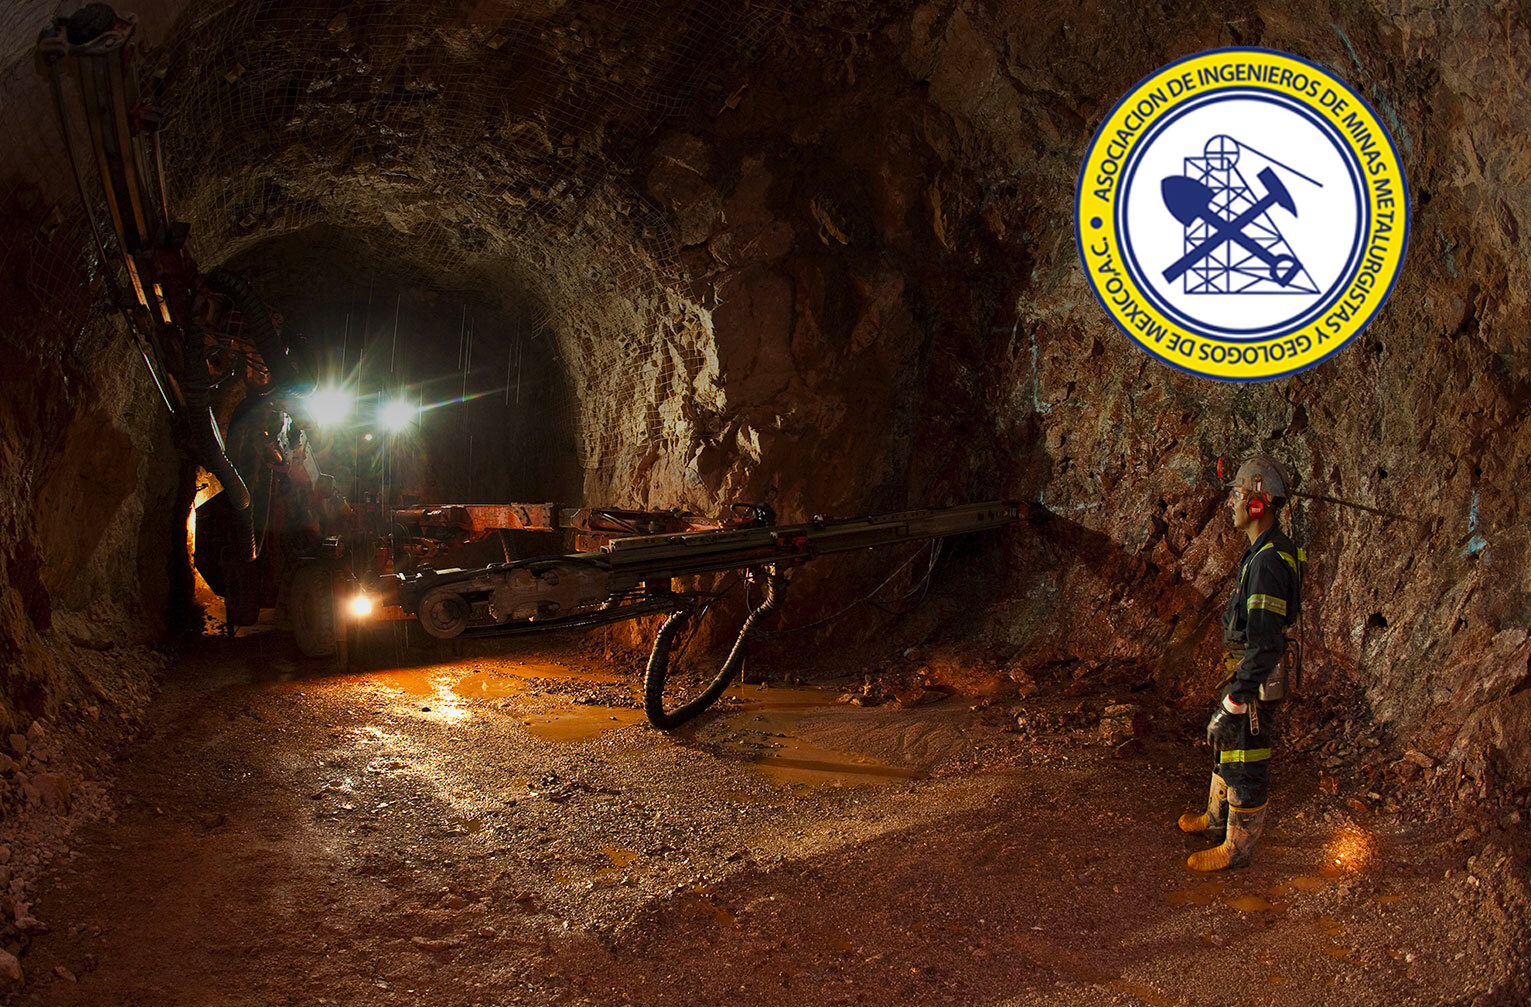 Trabajador minero dentro de una mina además del logo de AIMMGM en México